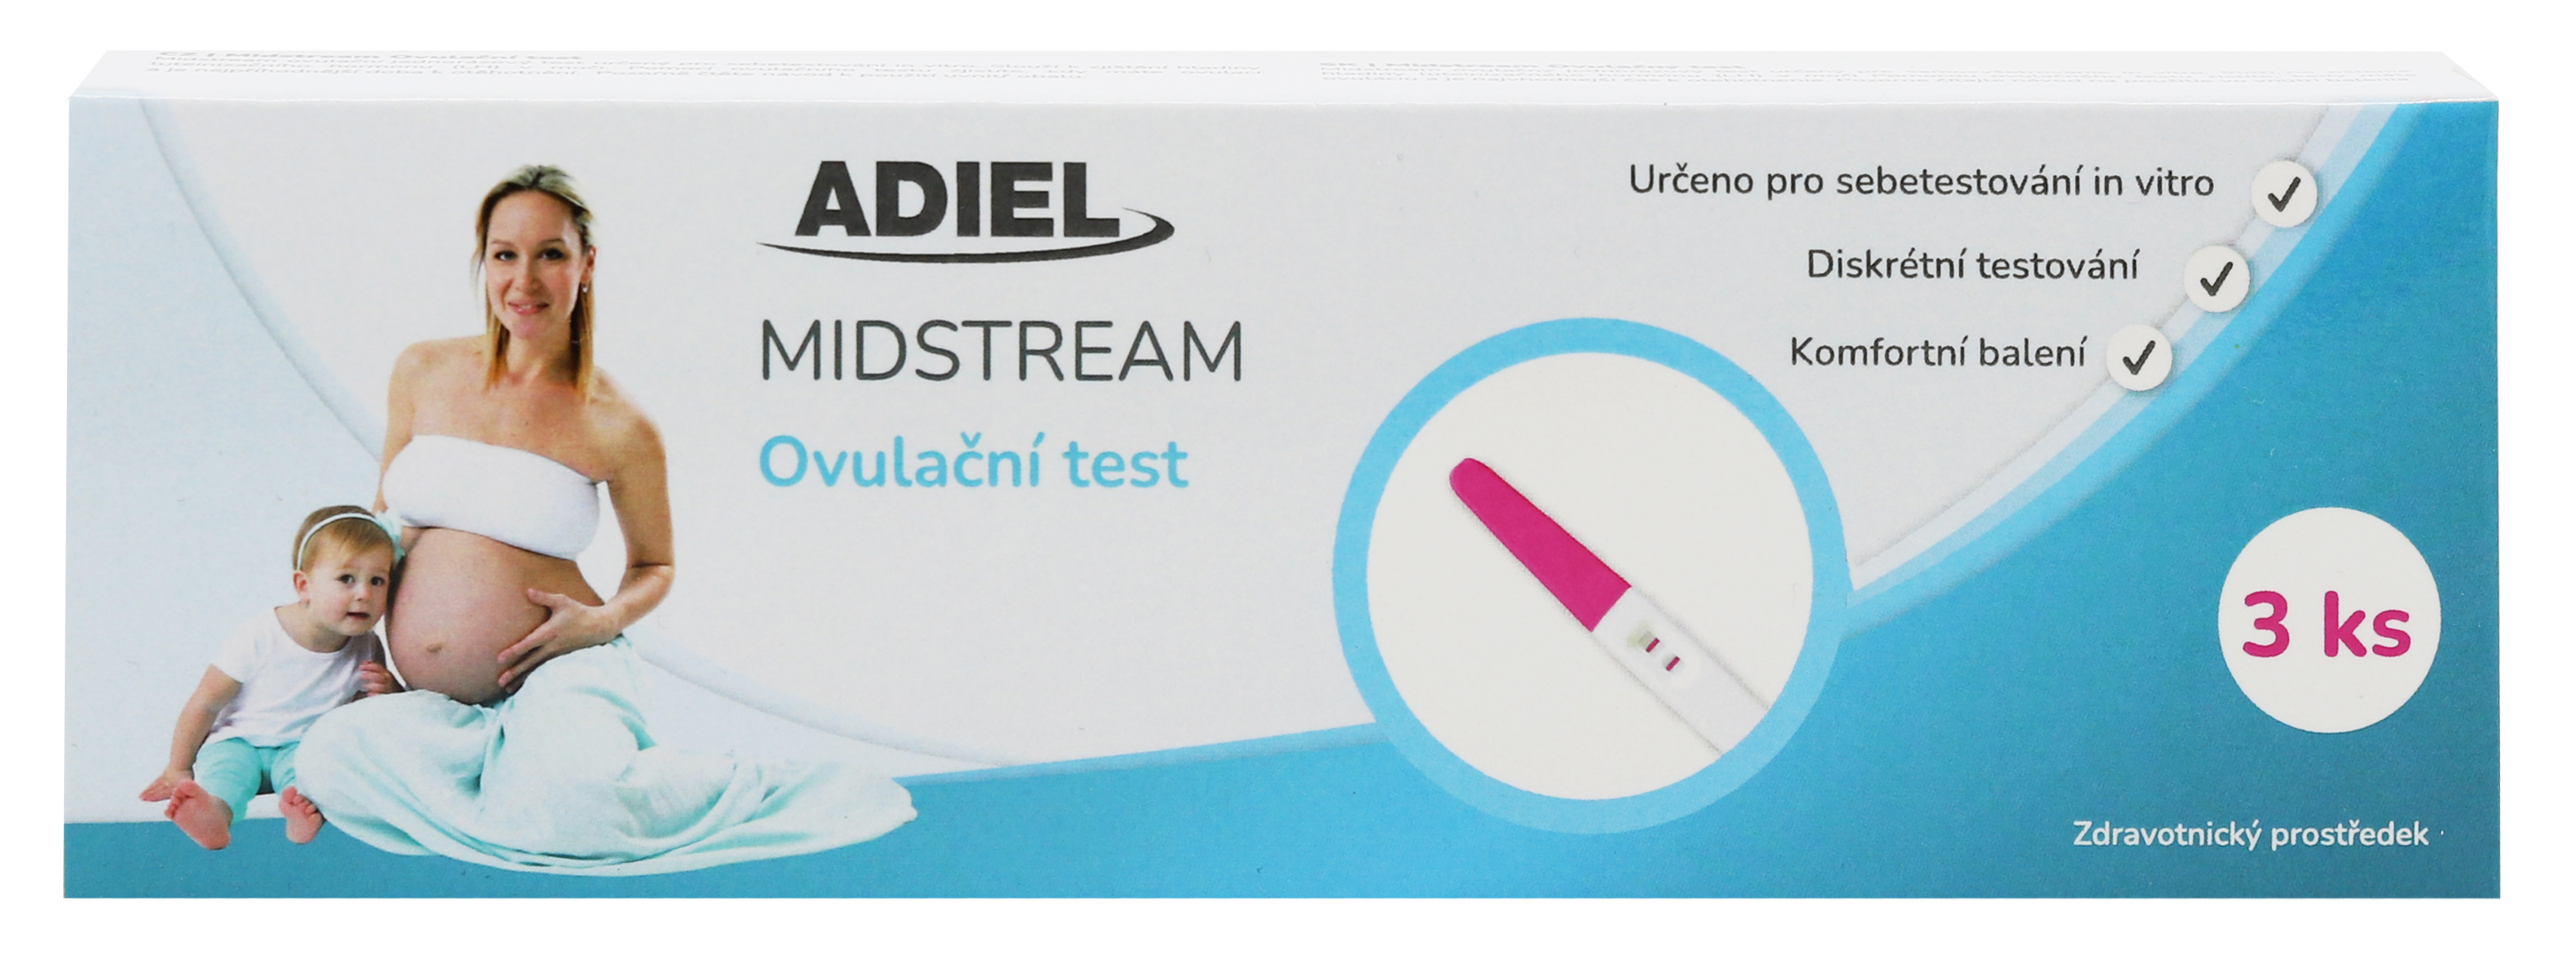 E-shop ADIEL Midstream ovulačný test, 3 ks